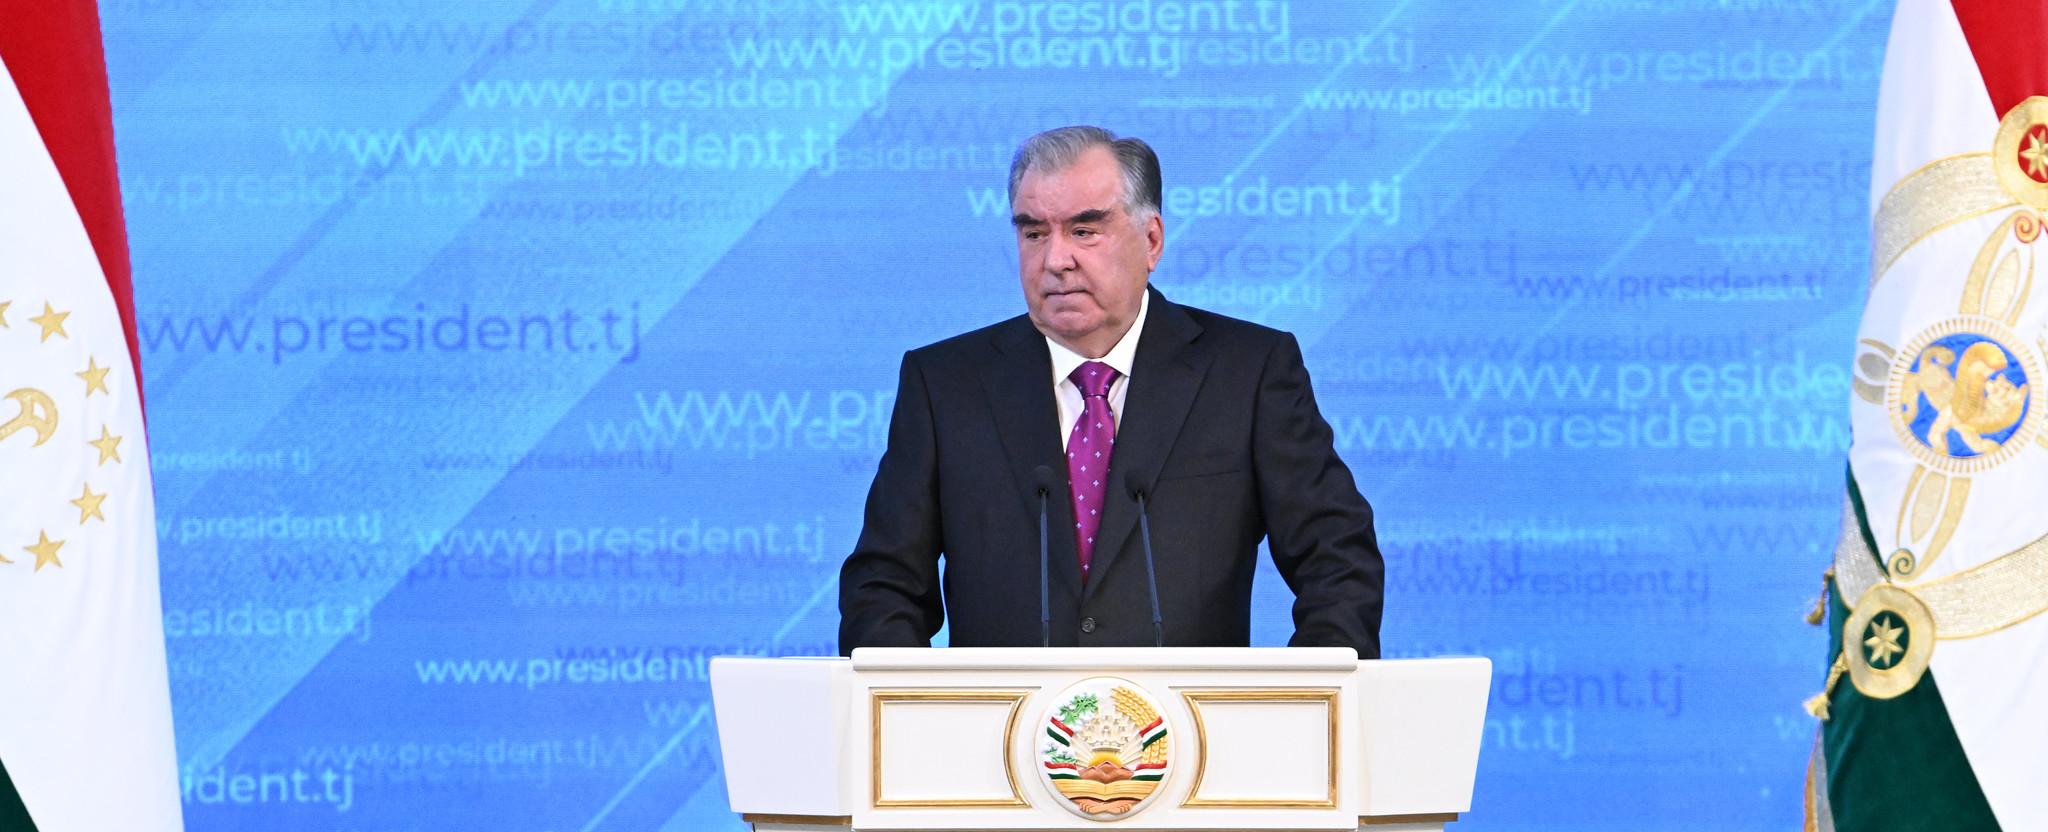 Послание Президента Республики Таджикистан уважаемого Эмомали Рахмона «Об основных направлениях внутренней и внешней политики республики»